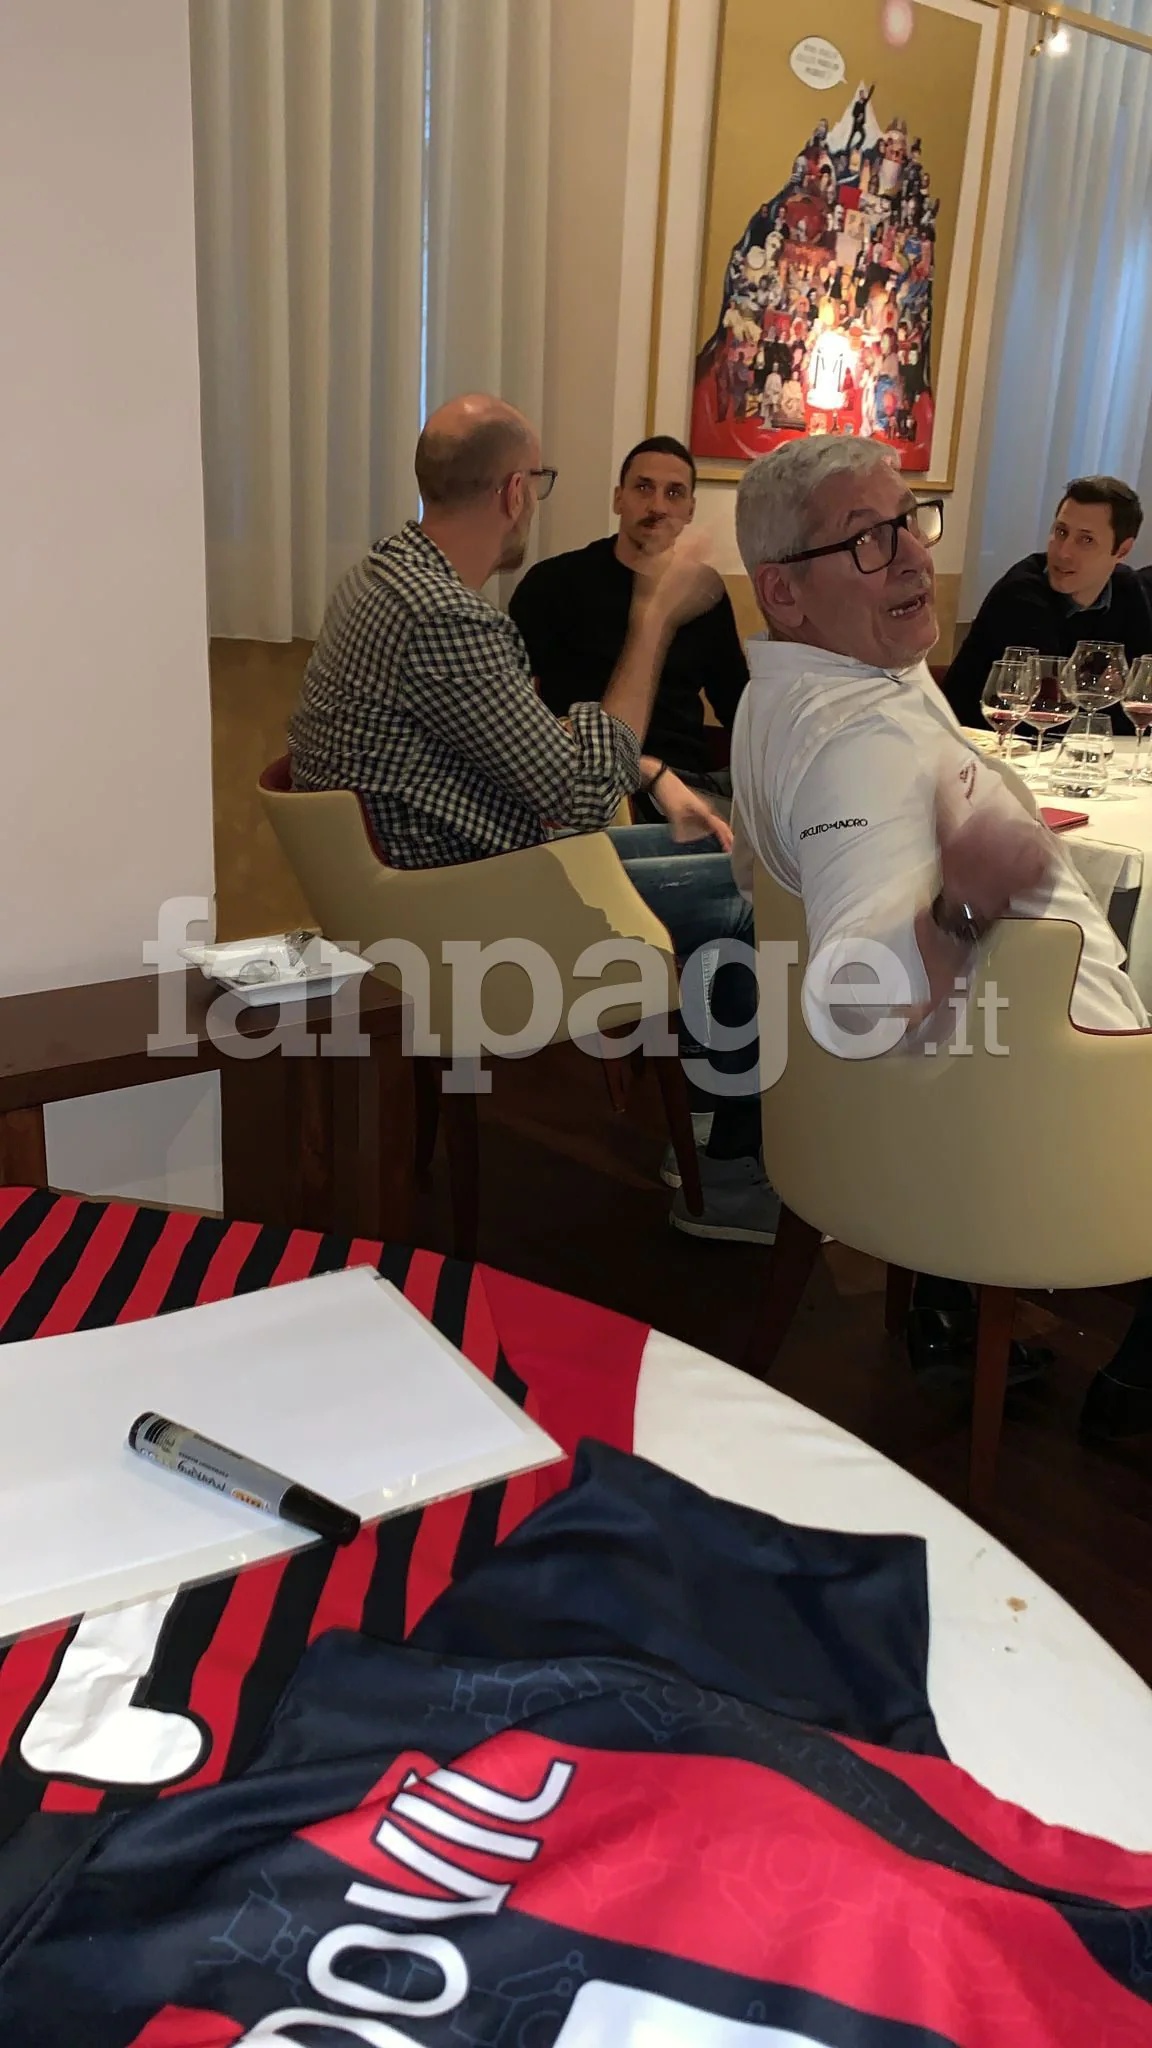 Zlatan es sorprendido comiendo en un restaurante prohibido (Fanpage IT)